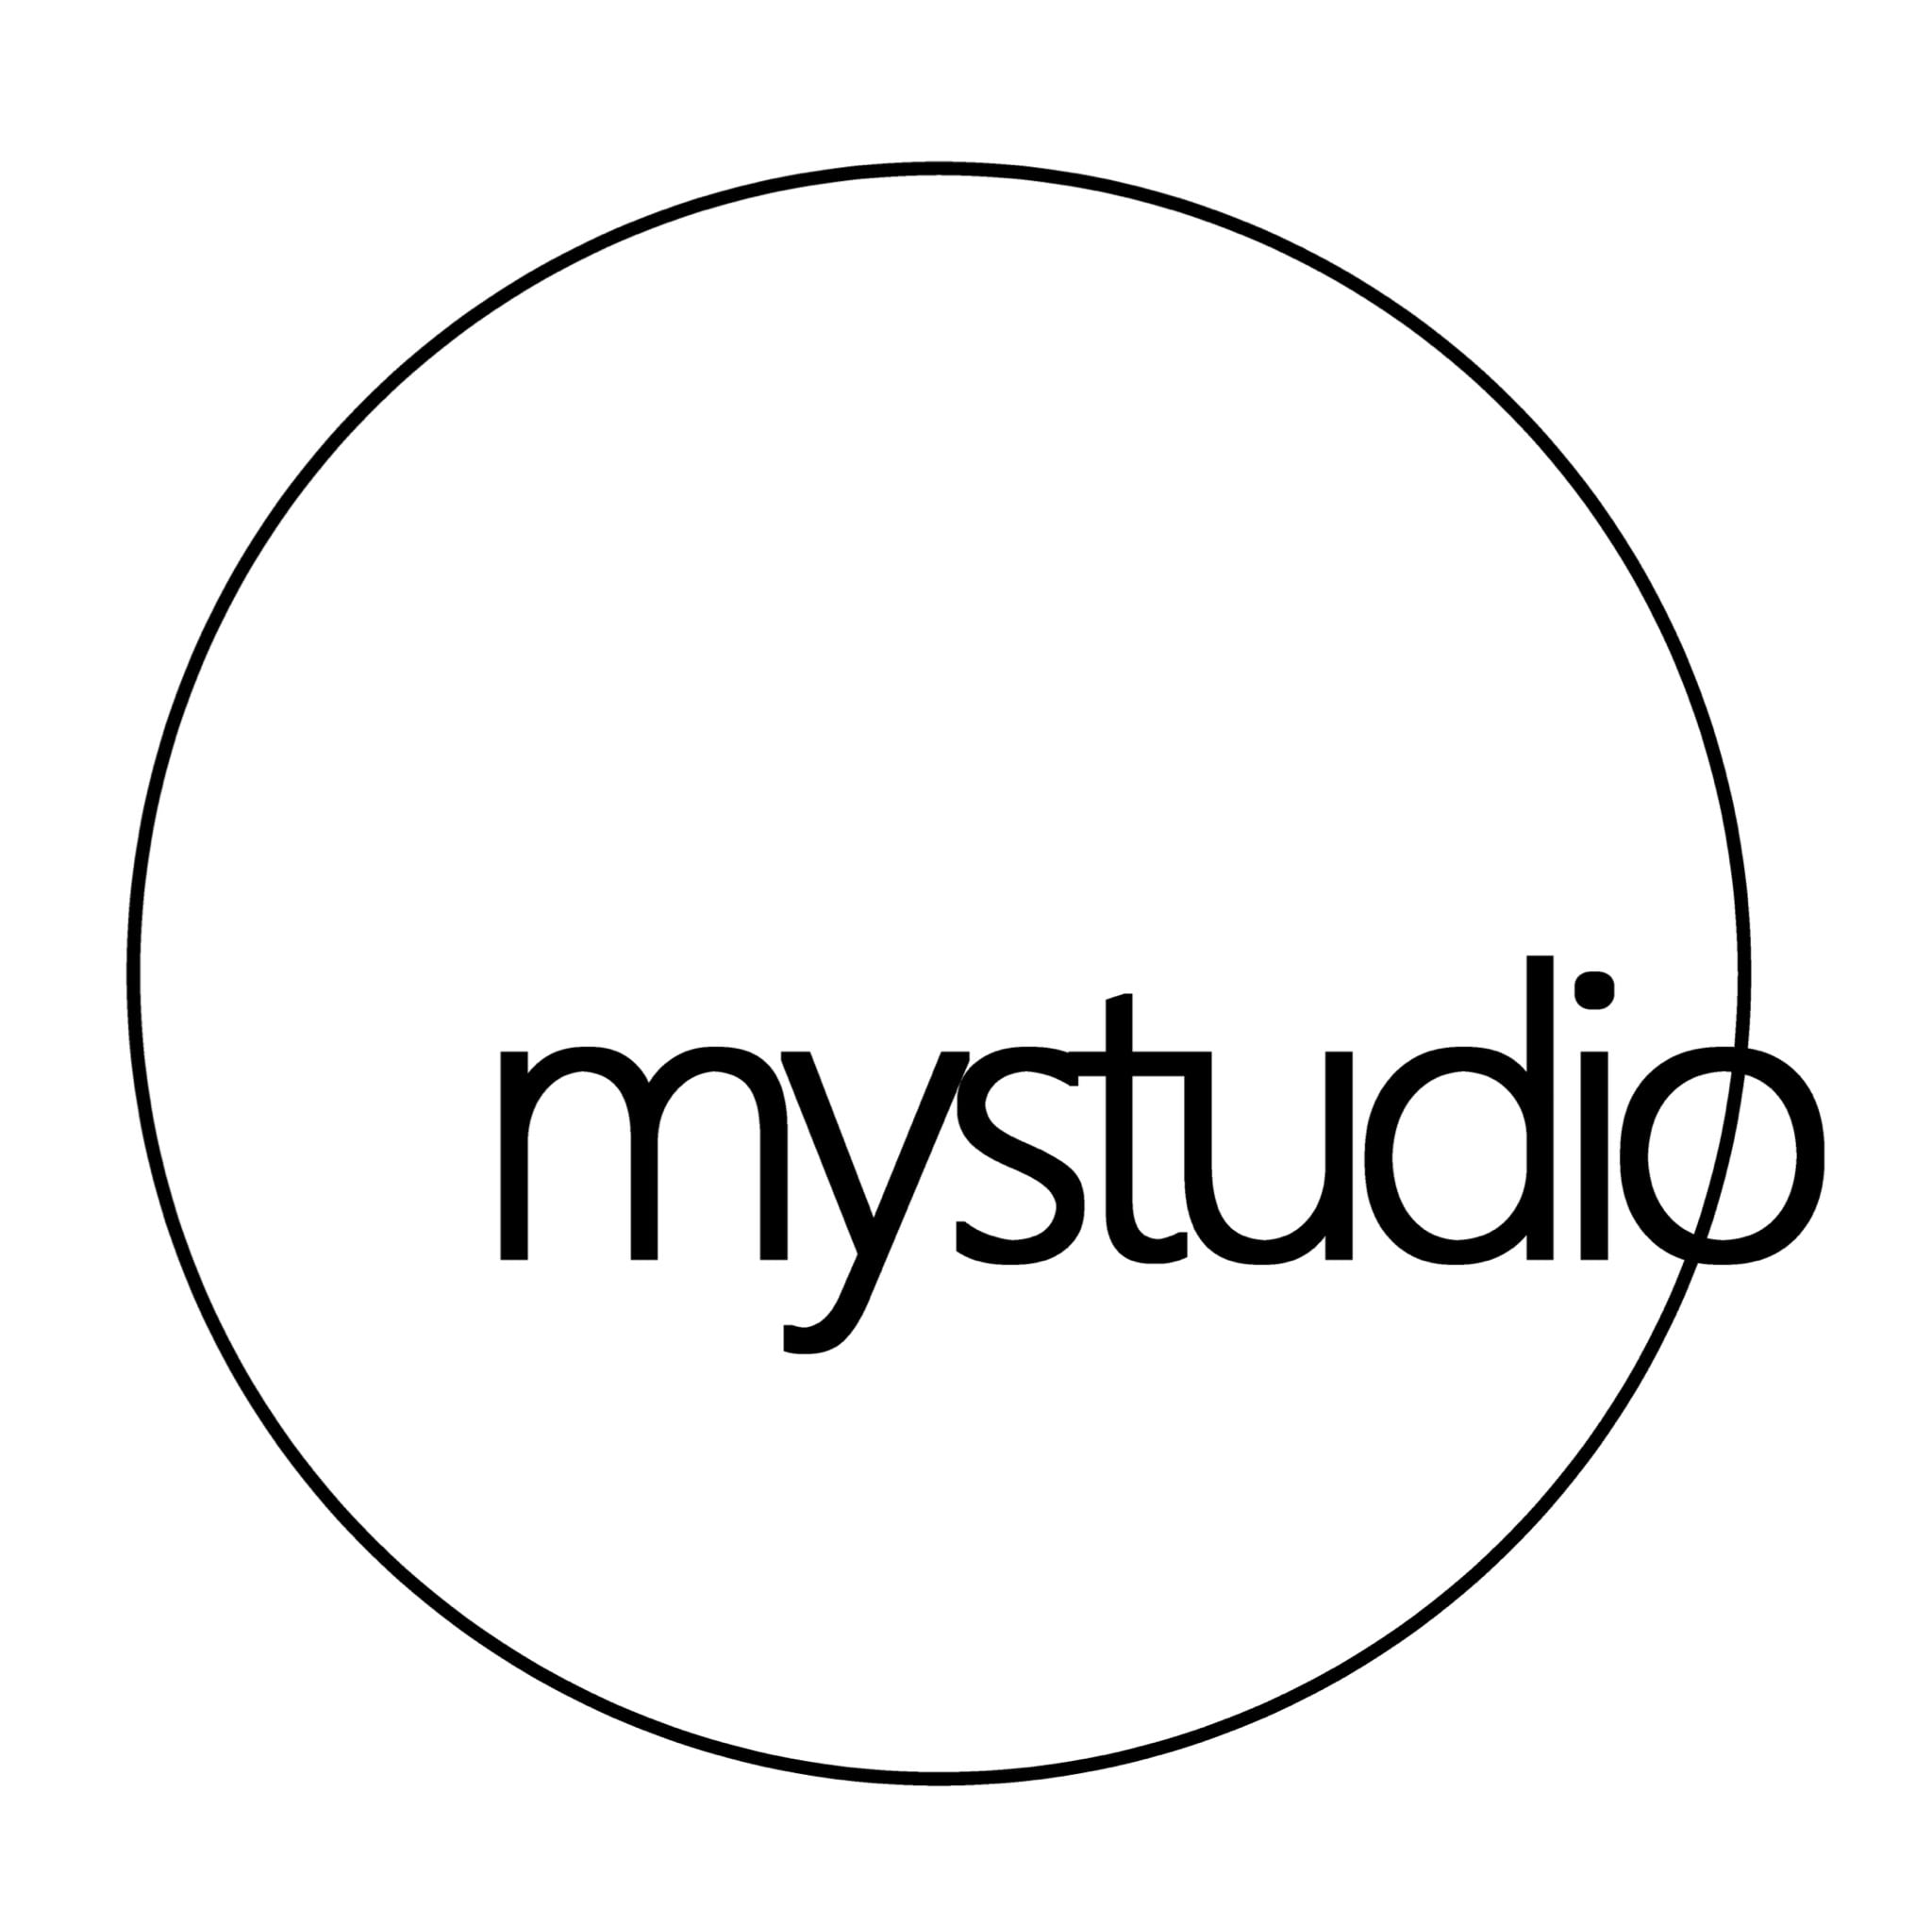 ミスタジオ -mystudio-